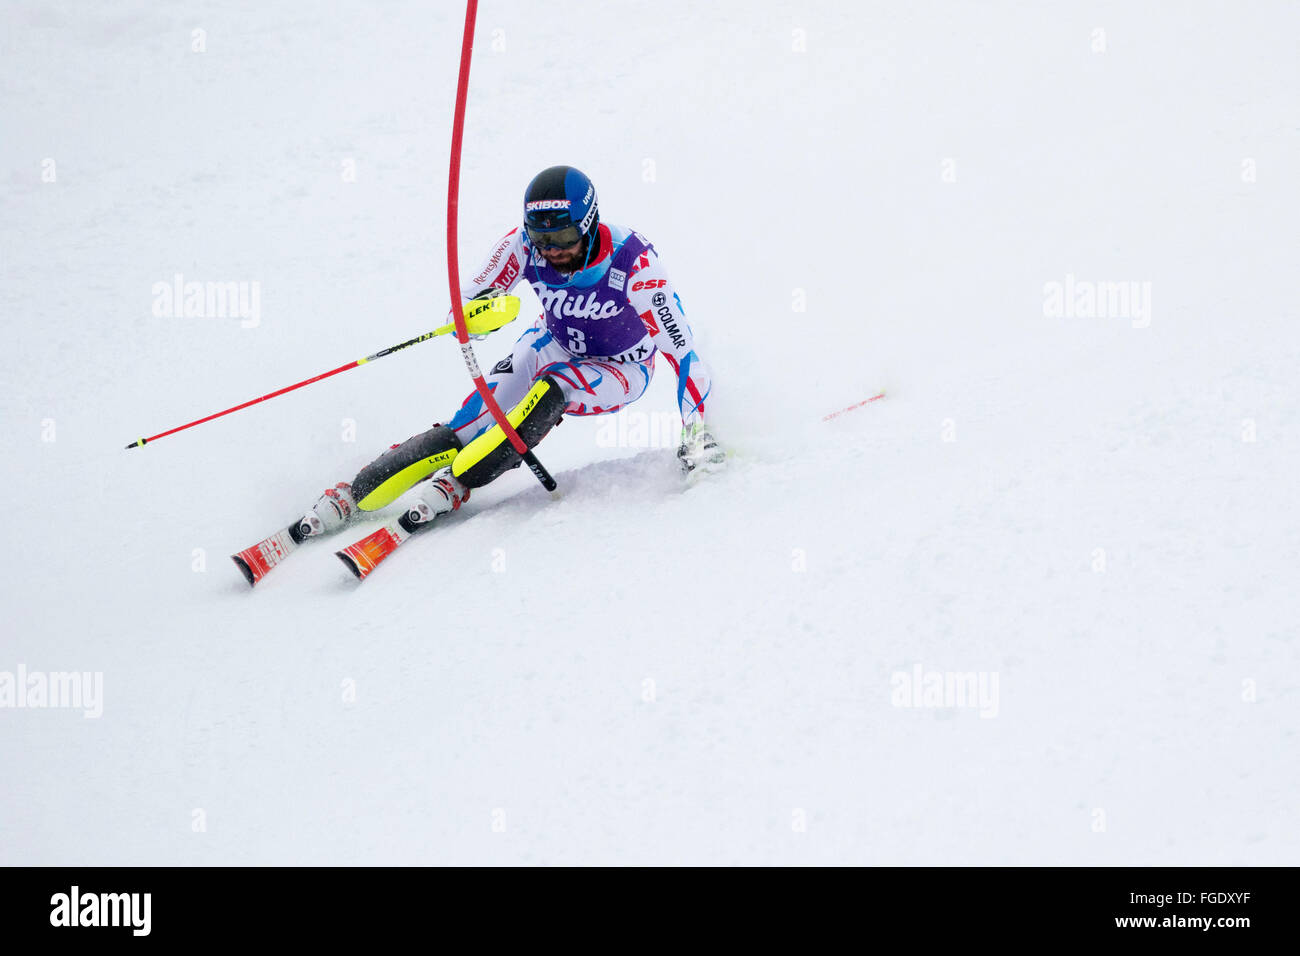 Chamonix, France. 19 Février, 2016. L'épreuve du combiné alpin masculin (descente et slalom) a commencé avec la section slalom de la course au lieu de la descente en raison des conditions météorologiques (neige lourde) à Chamonix à 10:30h. Membre de l'équipe française Thomas MERMILLOD BLONDIN. Après la première exécution les classements sont 1- Alexis PINTURAULT (FRA) 42,55 2- MERMILLOD BLONDIN Thomas (Fra) 42.91 3- MUFFAT-JEANDET Victor (FRA) 75.93 Crédit : Genyphyr Novak/Alamy Live News Banque D'Images